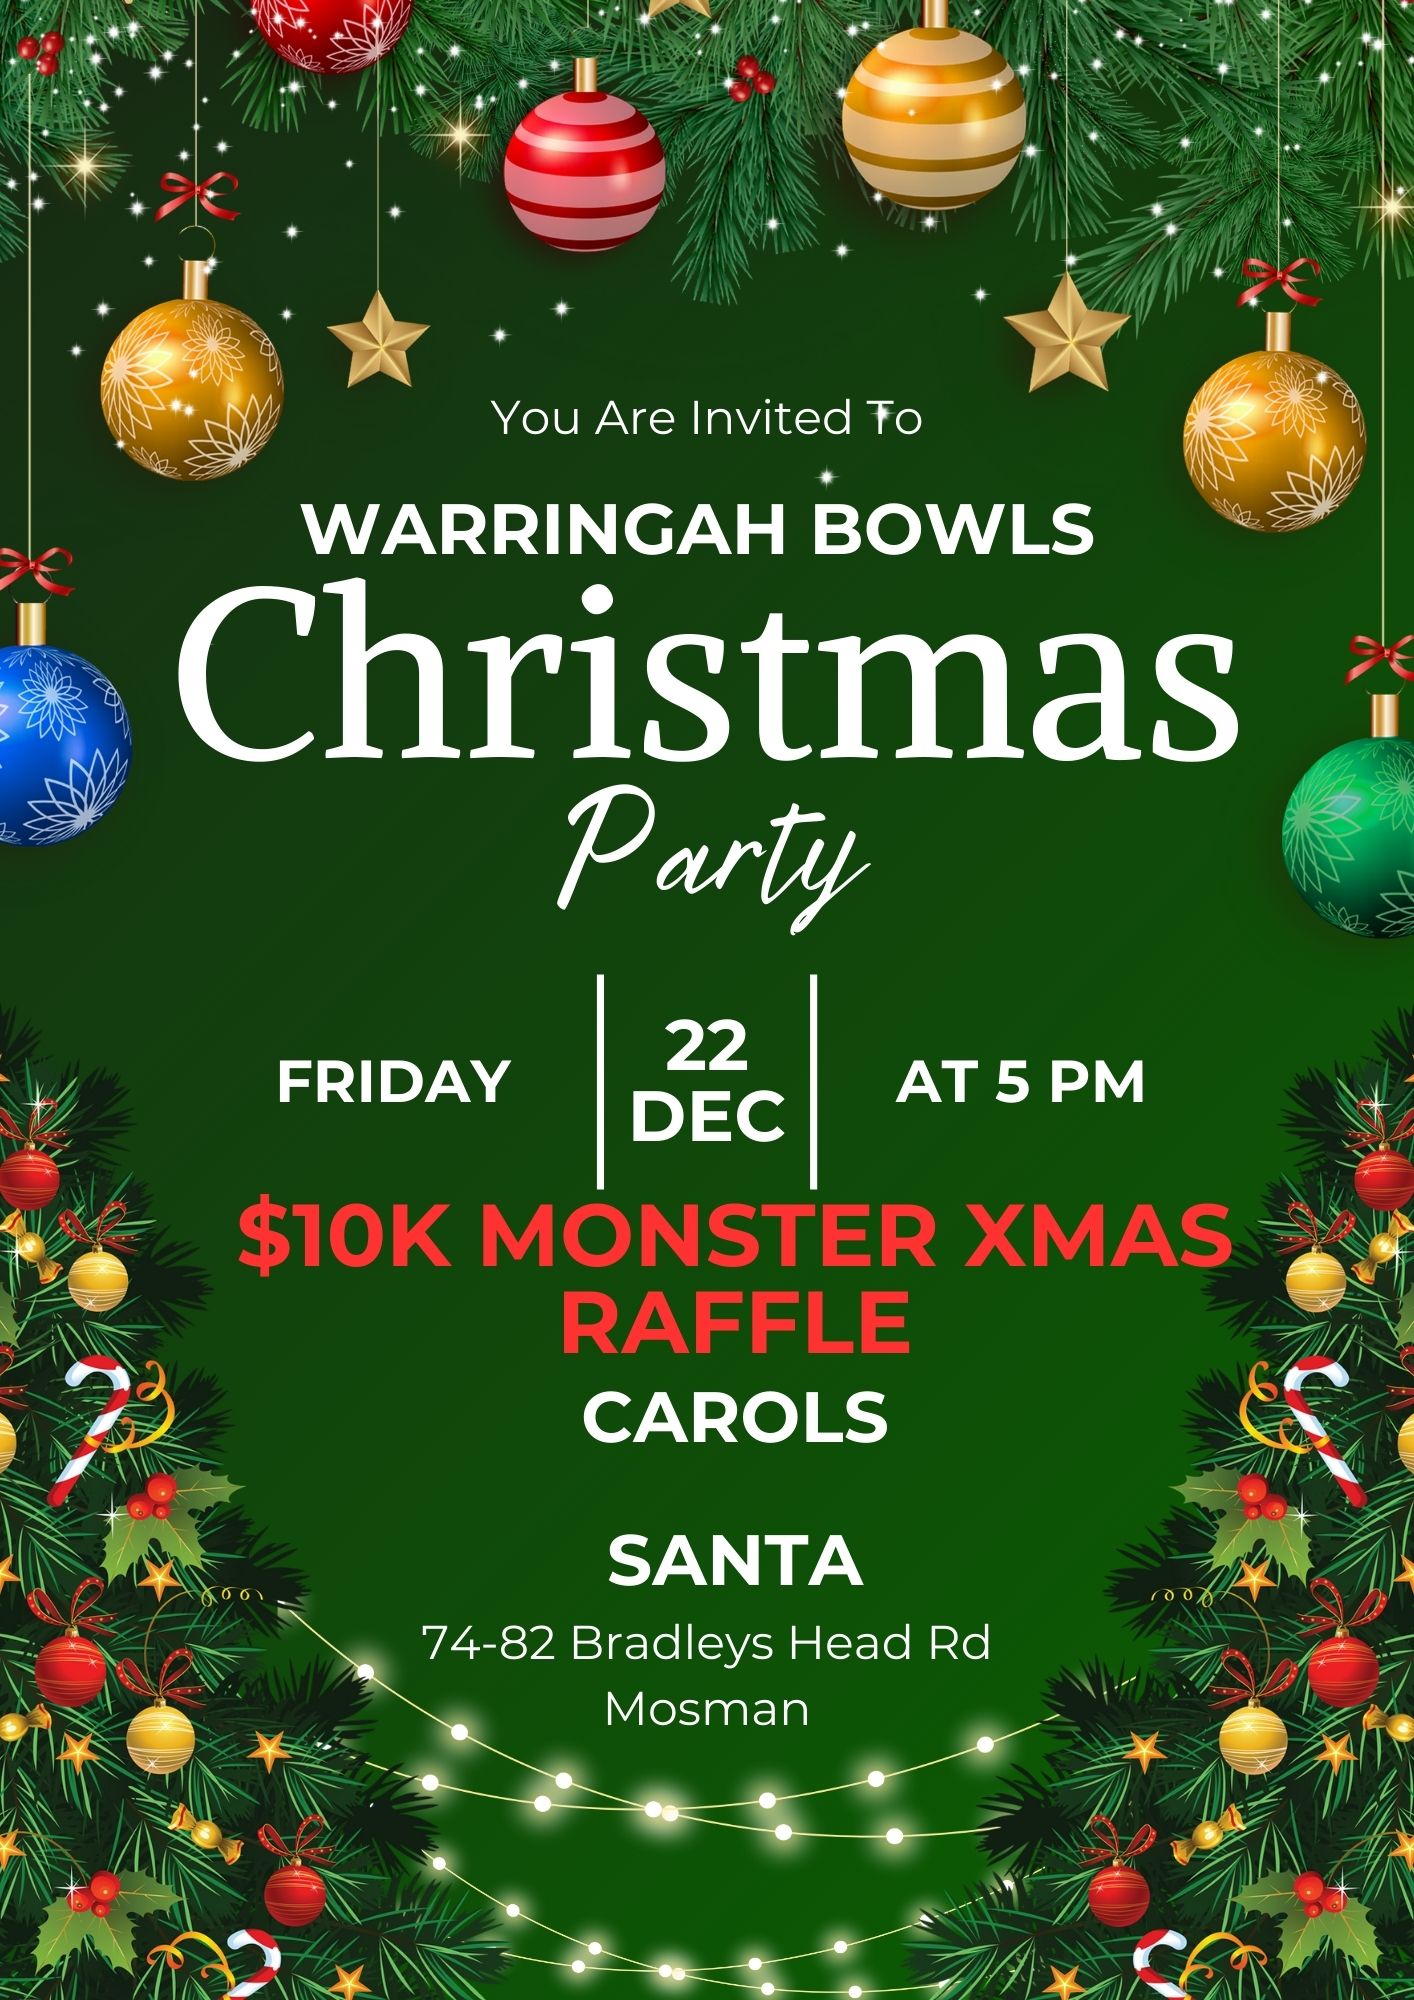 Warringah Bowls Christmas Party Friday 22nd December at 5pm $10k Monster Raffle Carols Santa